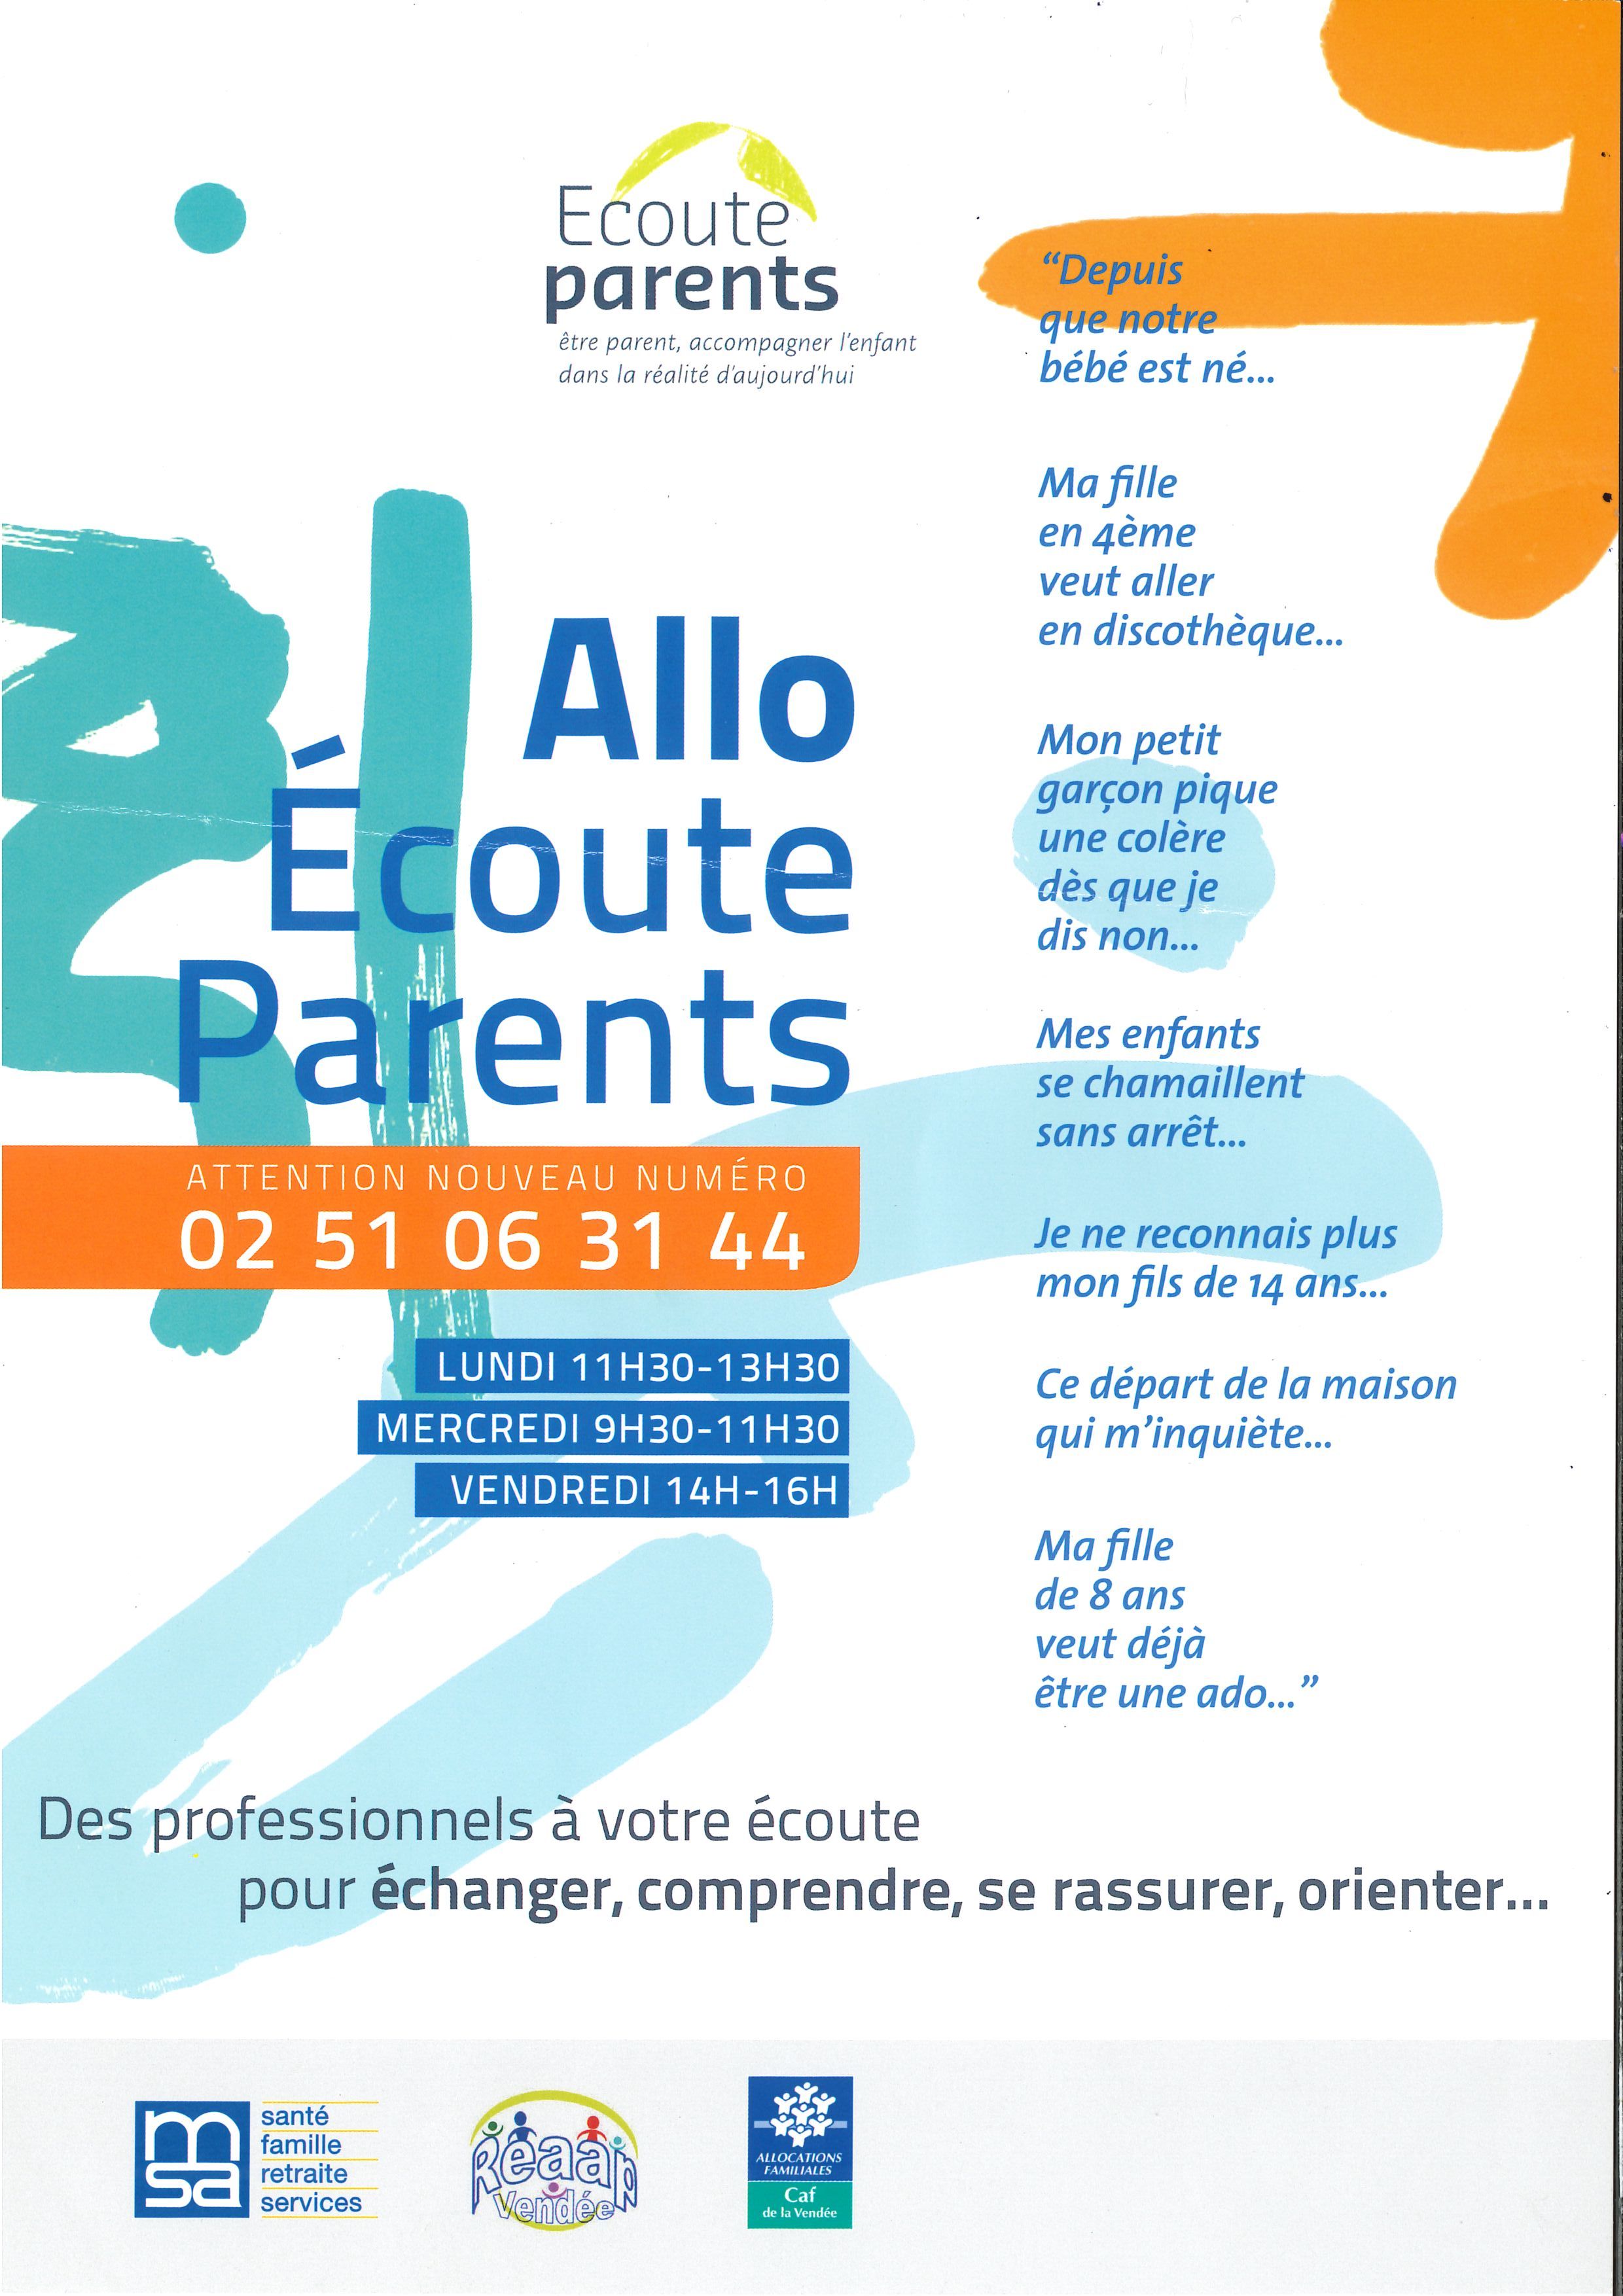 Allo-ecoute-parents-